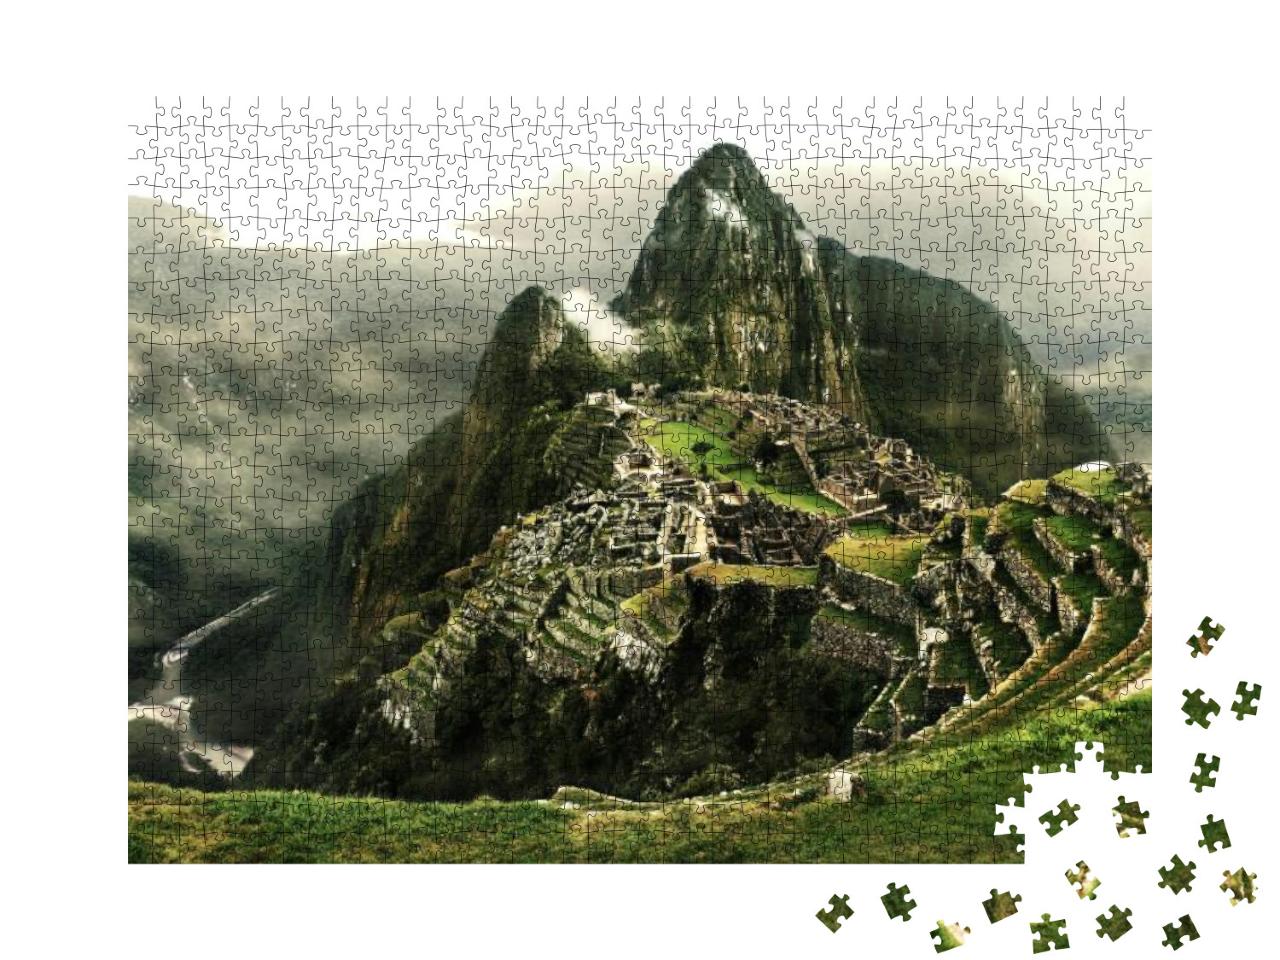 Puzzle 1000 Teile „Machu Picchu mit dem Fluss Urubamba, Peru“